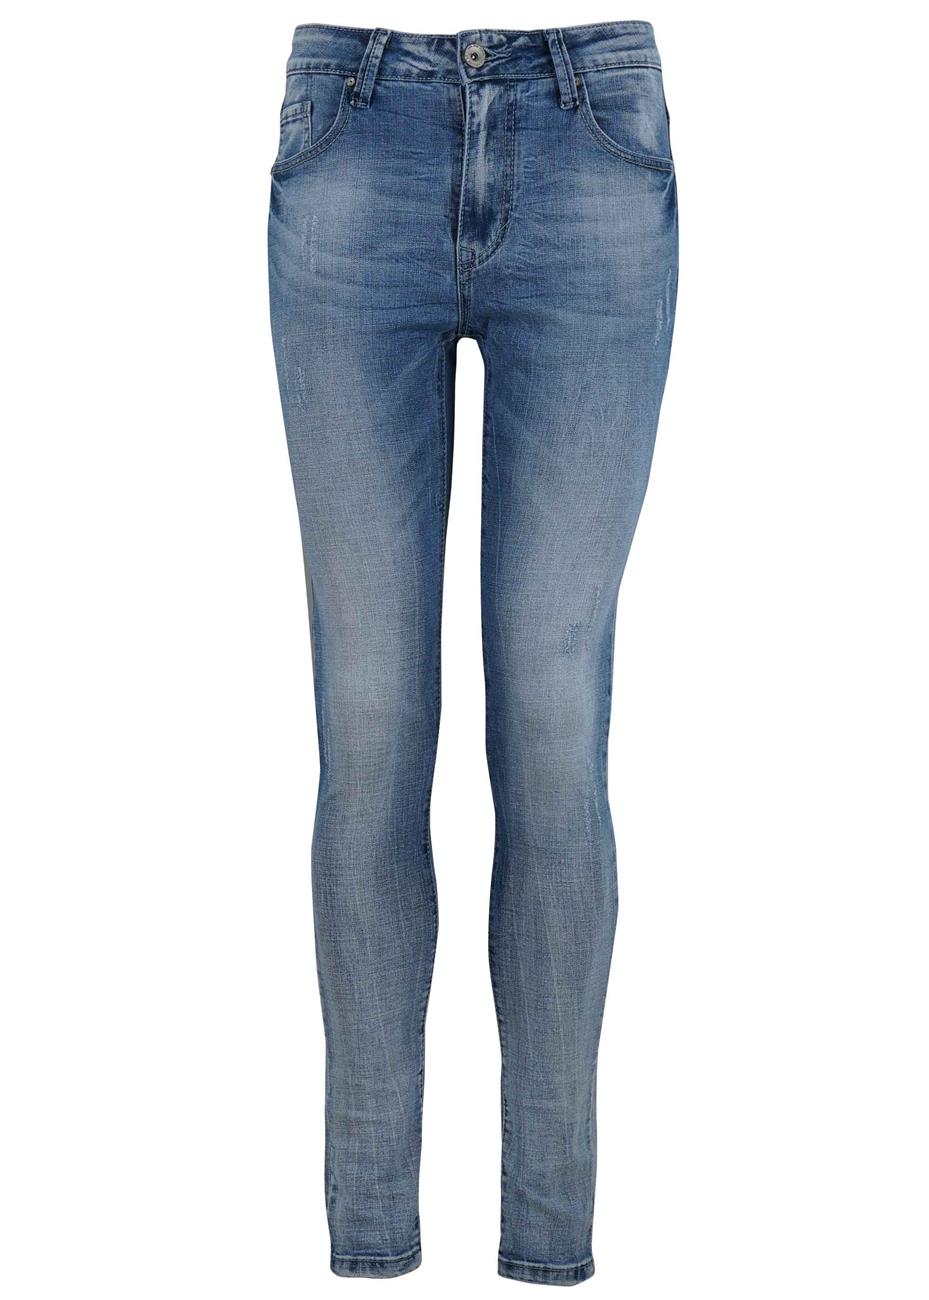 Ανδρικό παντελόνι με ξεβάματα skinny jean. Denim collection